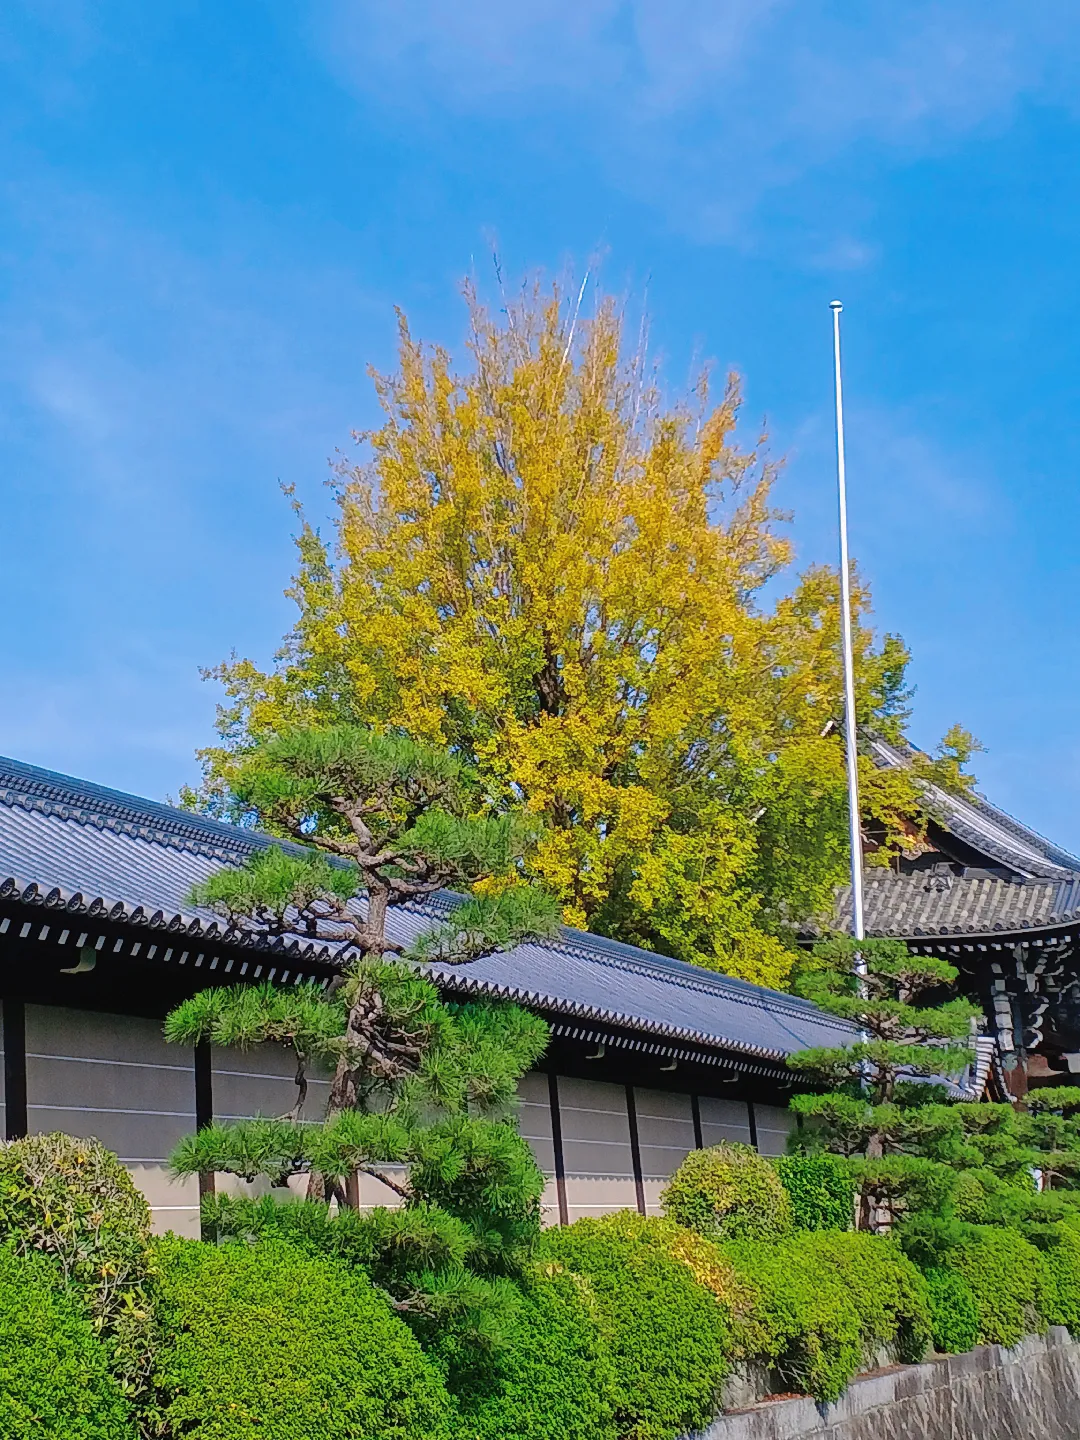 【京都ぶらり】秋晴れの京都から 西本願寺の大銀杏の画像 (2枚目)